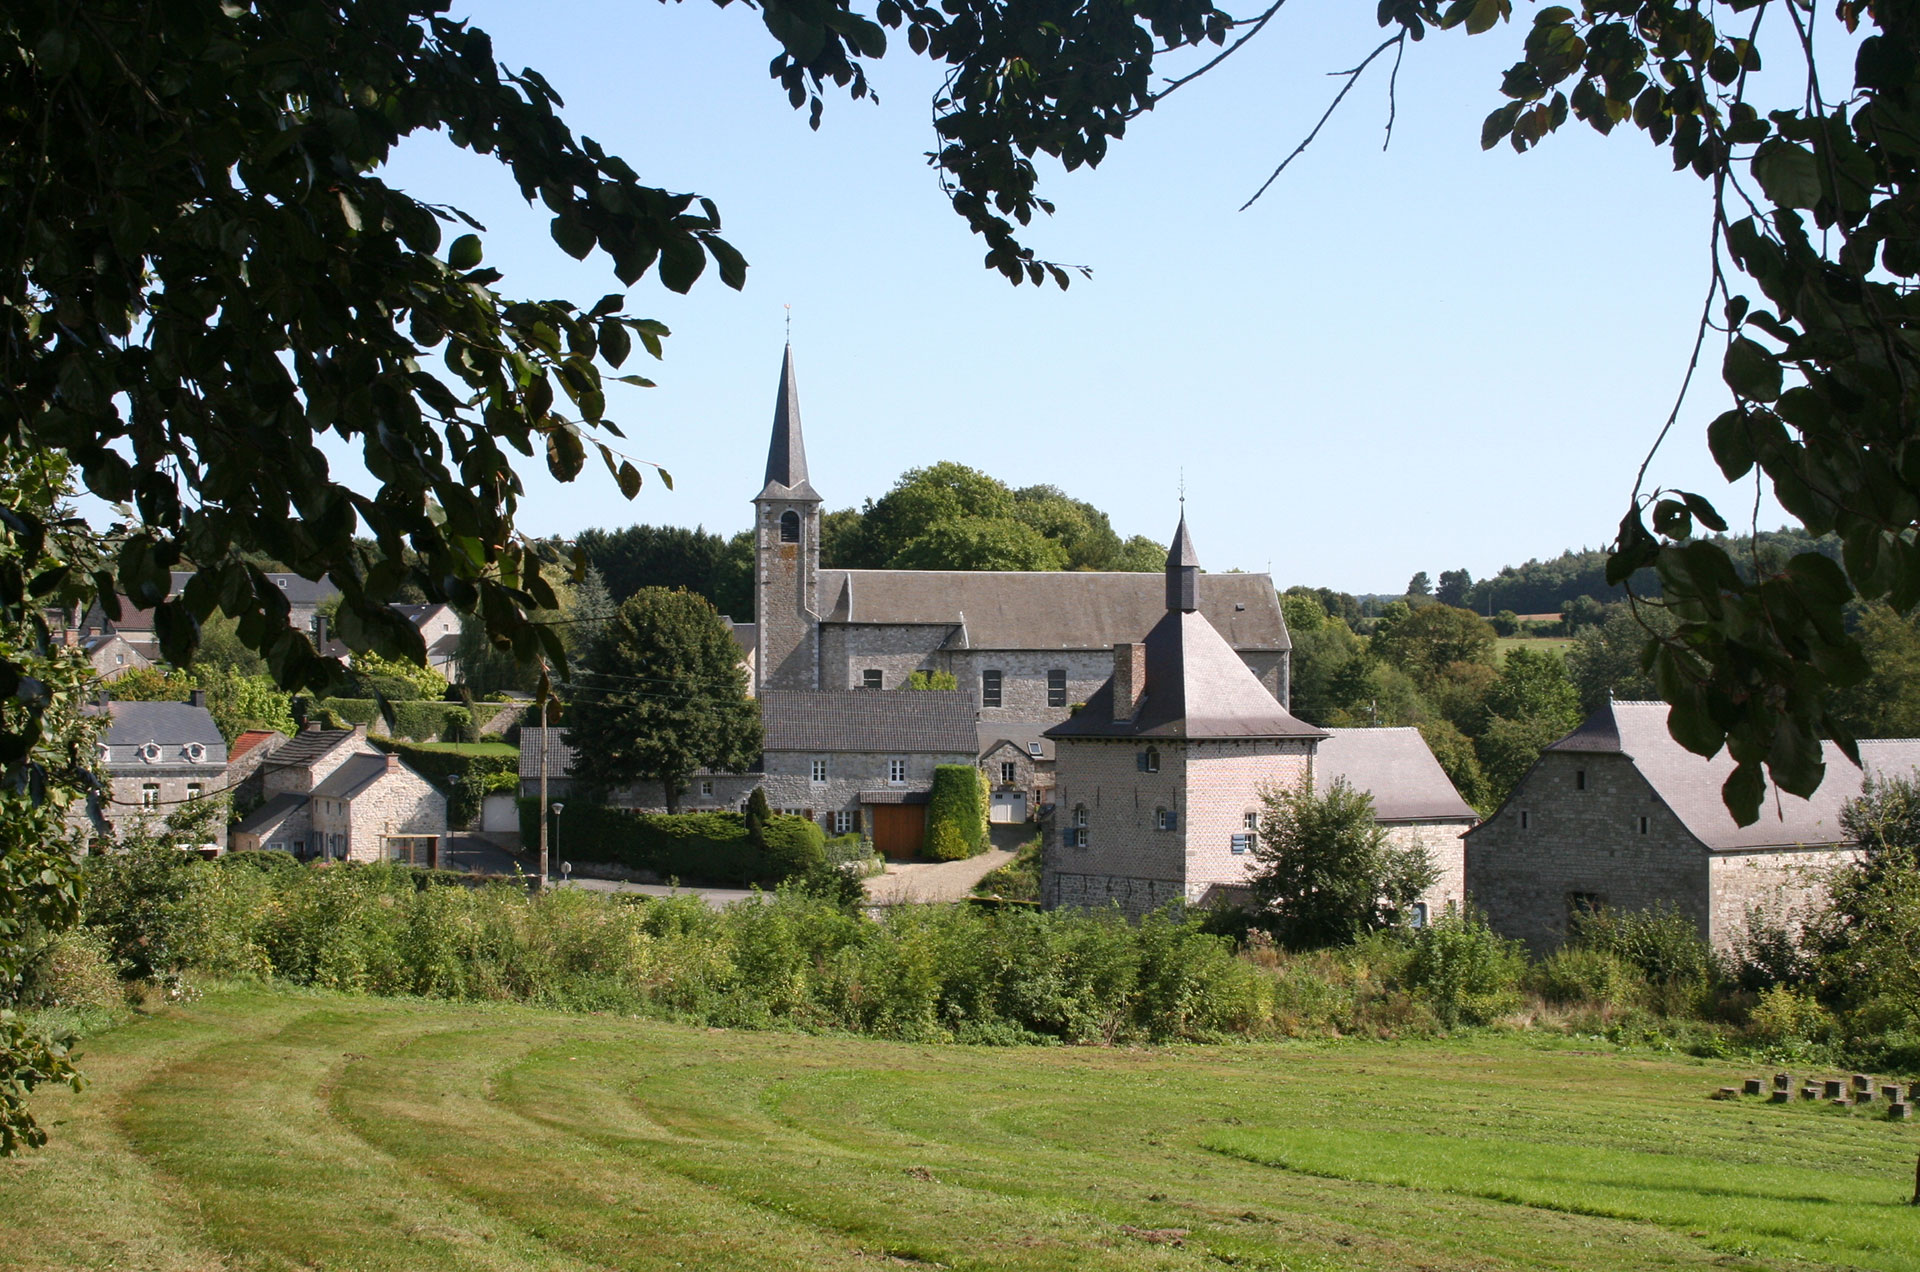 Les plus beaux villages de Wallonie - Mozet - clocher - paysage - ciel bleu - nature